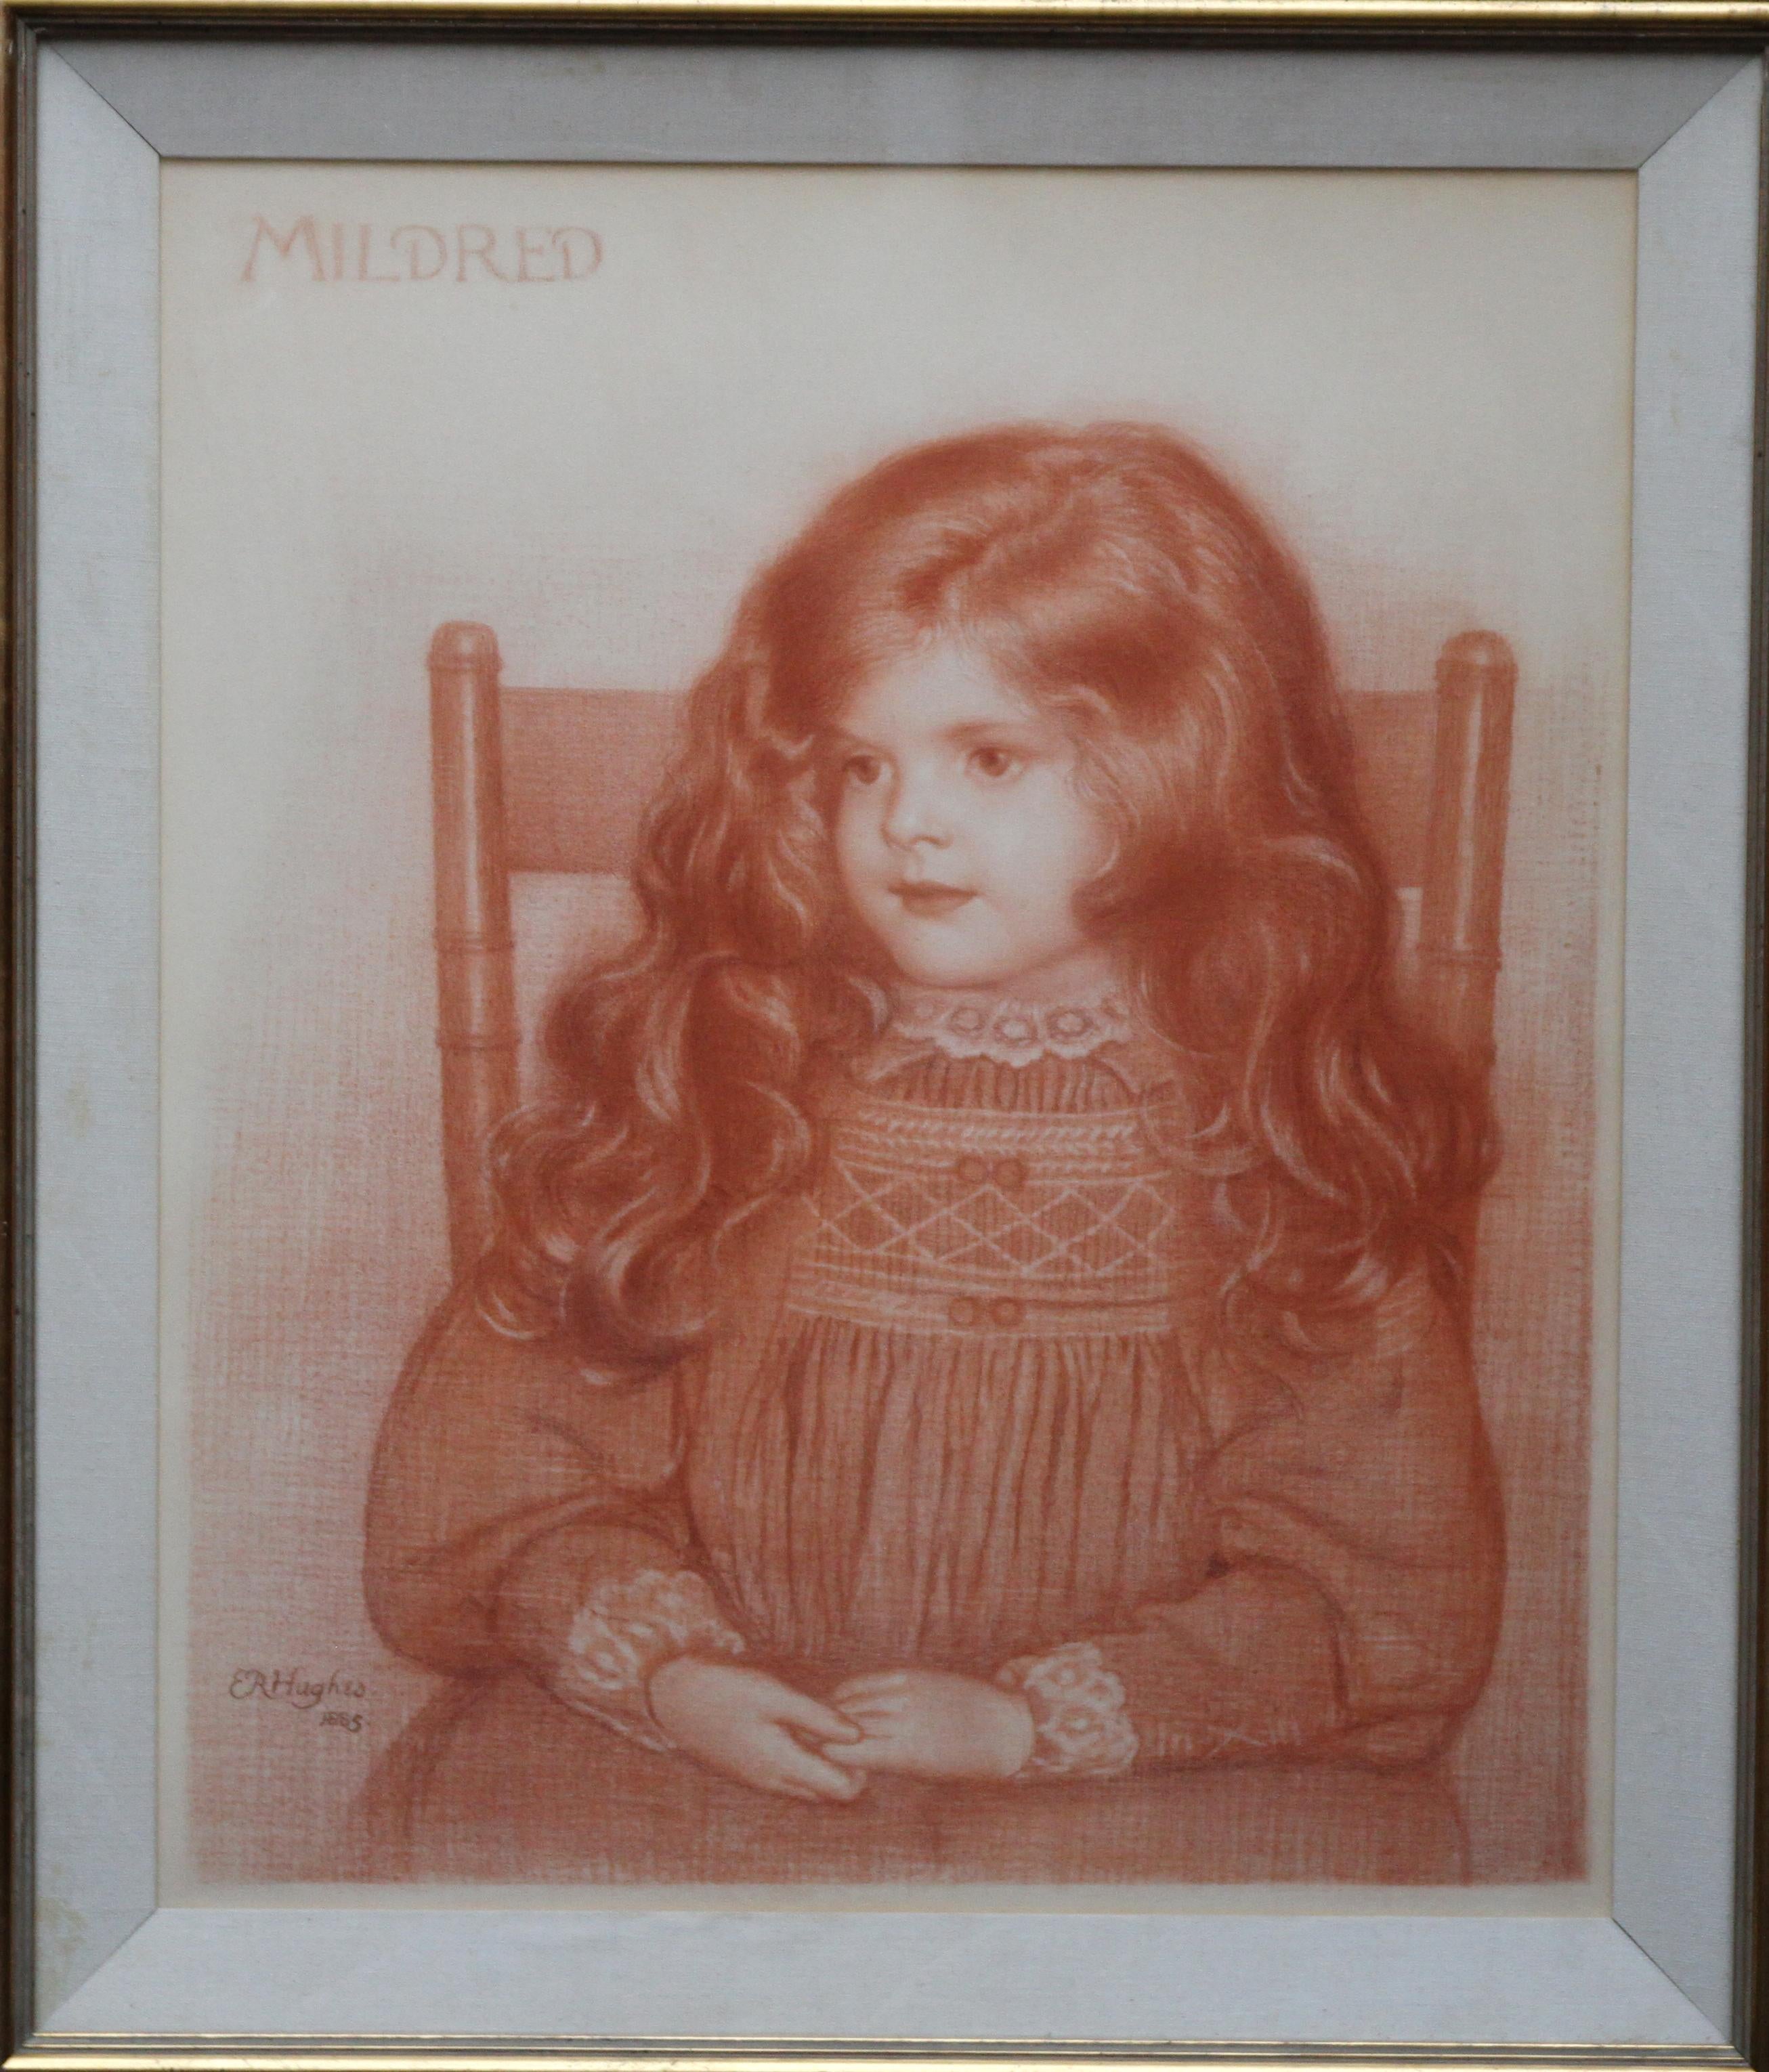 Porträt von Mildred – britisches viktorianisches, präraffaelitisches, sitzendes junges Mädchen